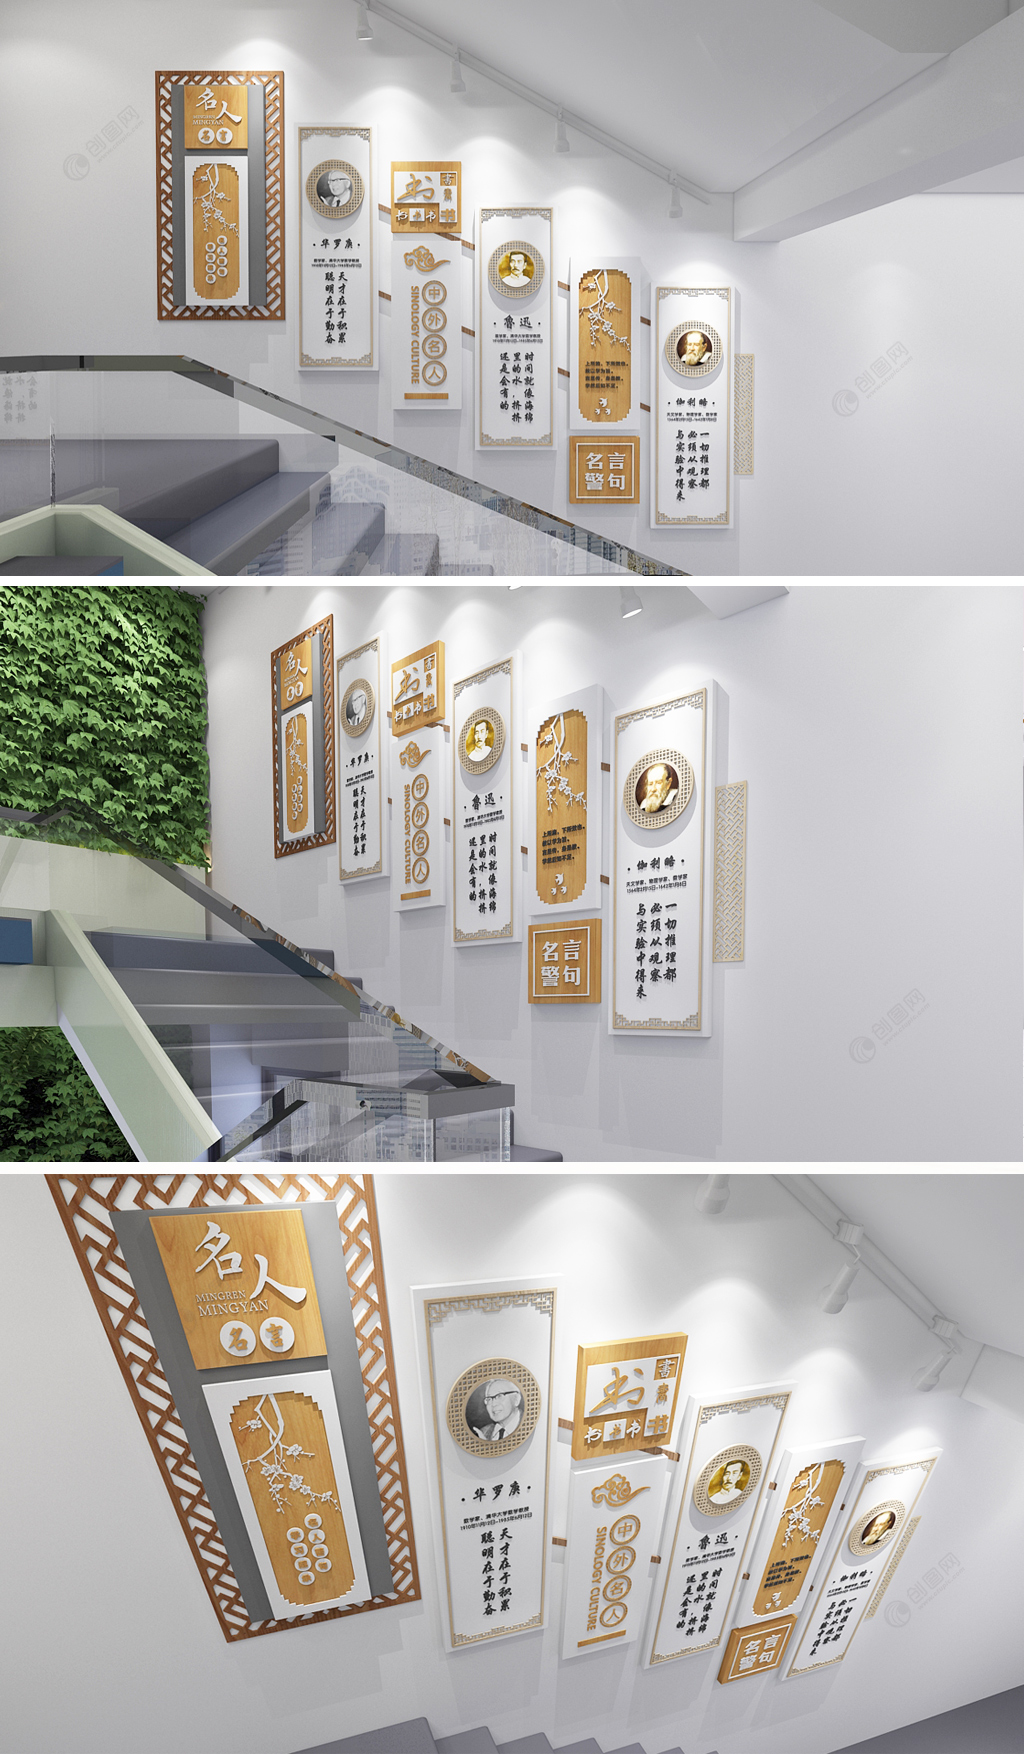 名人名言校园文化墙楼梯文化墙设计效果图